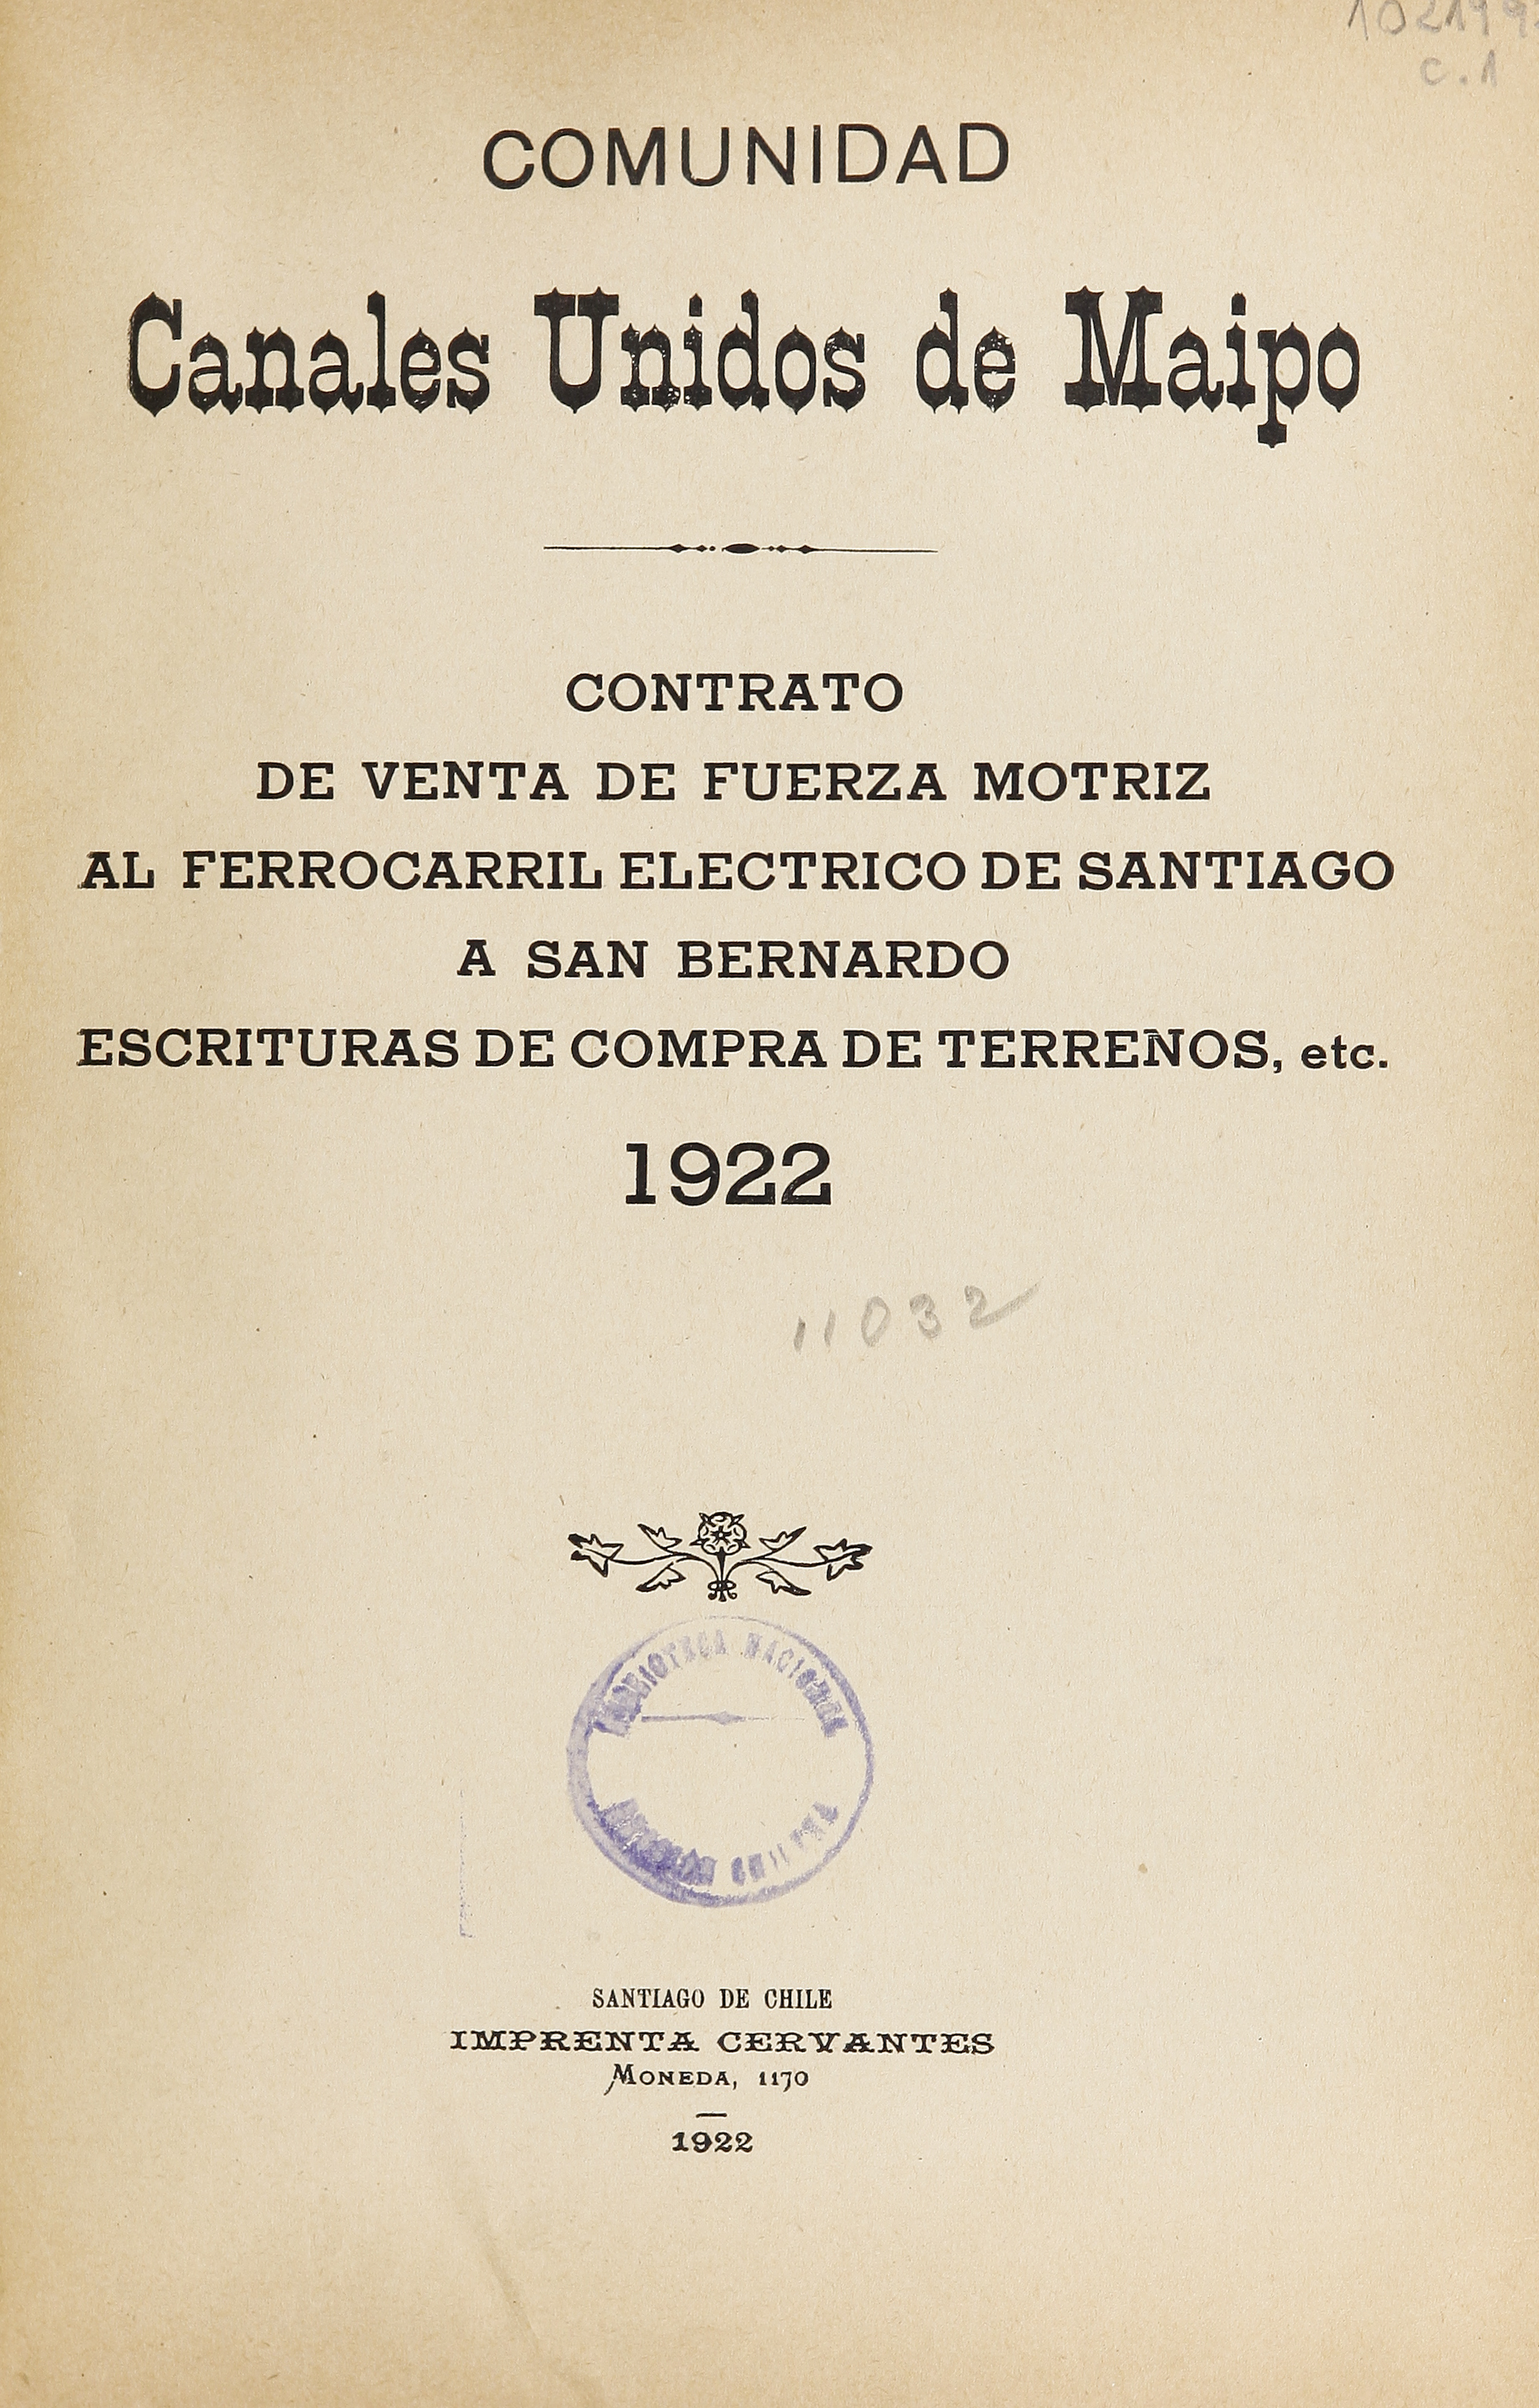 Contrato de venta de fuerza motriz al ferrocarril eléctrico de Santiago a San Bernardo, escrituras de compra de terrenos, etc. : 1922